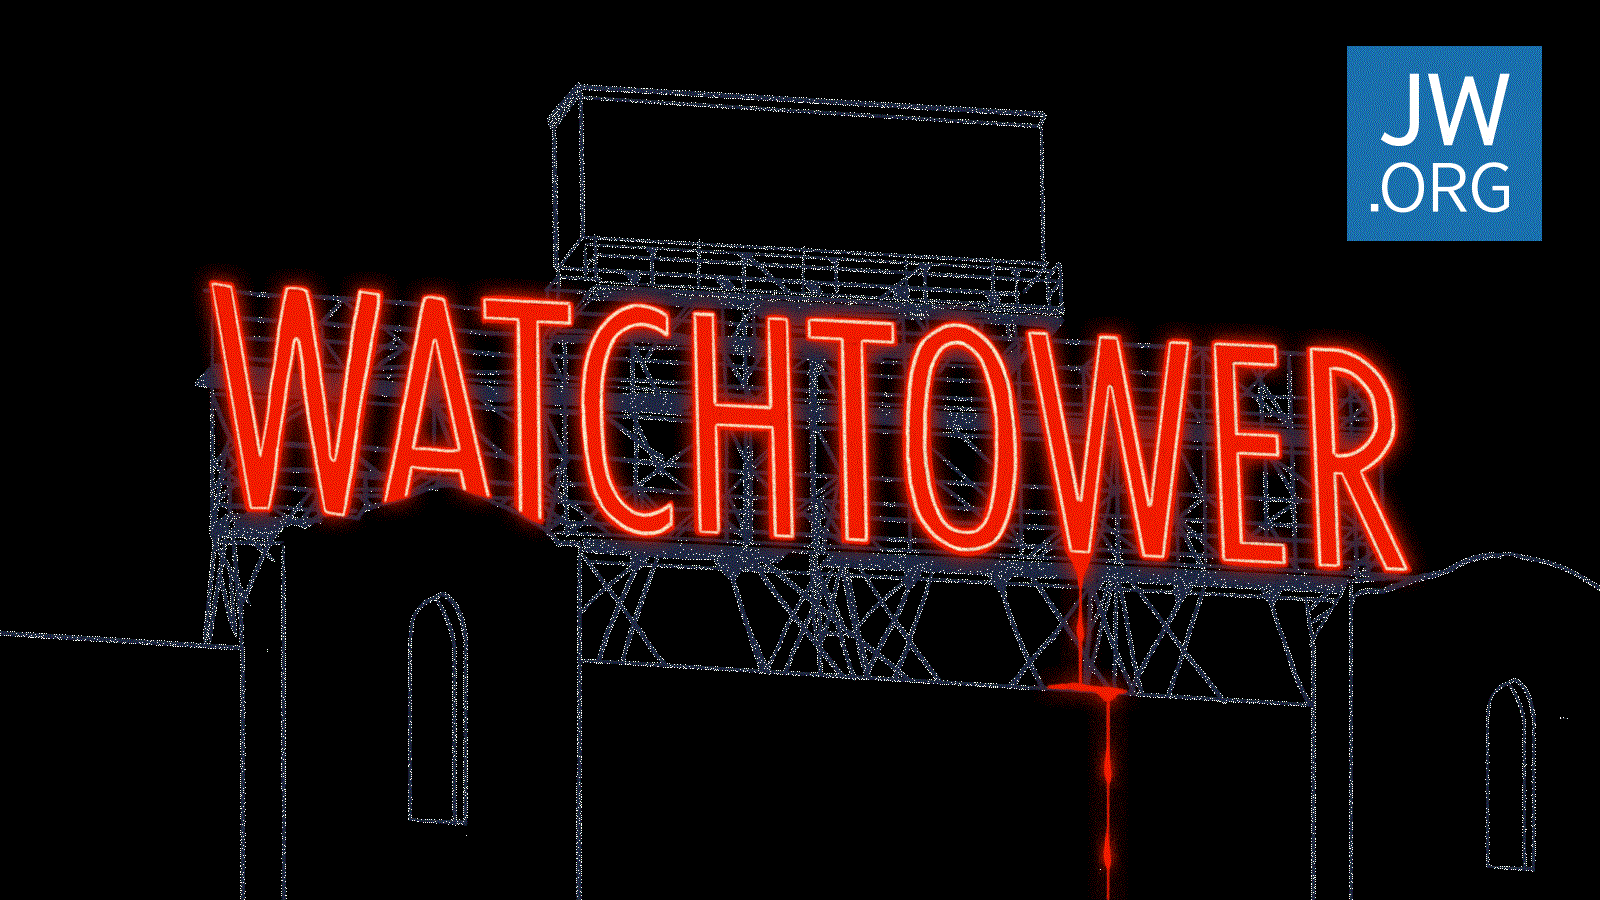 Kindesmissbrauch Der Fall des Wachtturms Detaillierte Dokumente über das interne Rechtsverfahren JW.ORG Wahrheit Wahrheiten jetzt! Jehovas Zeugen - Geschworene verklagen die Wachtturm-Organisation aufgrund von Kindesmissbrauch zu 35 Millionen US-Dollar